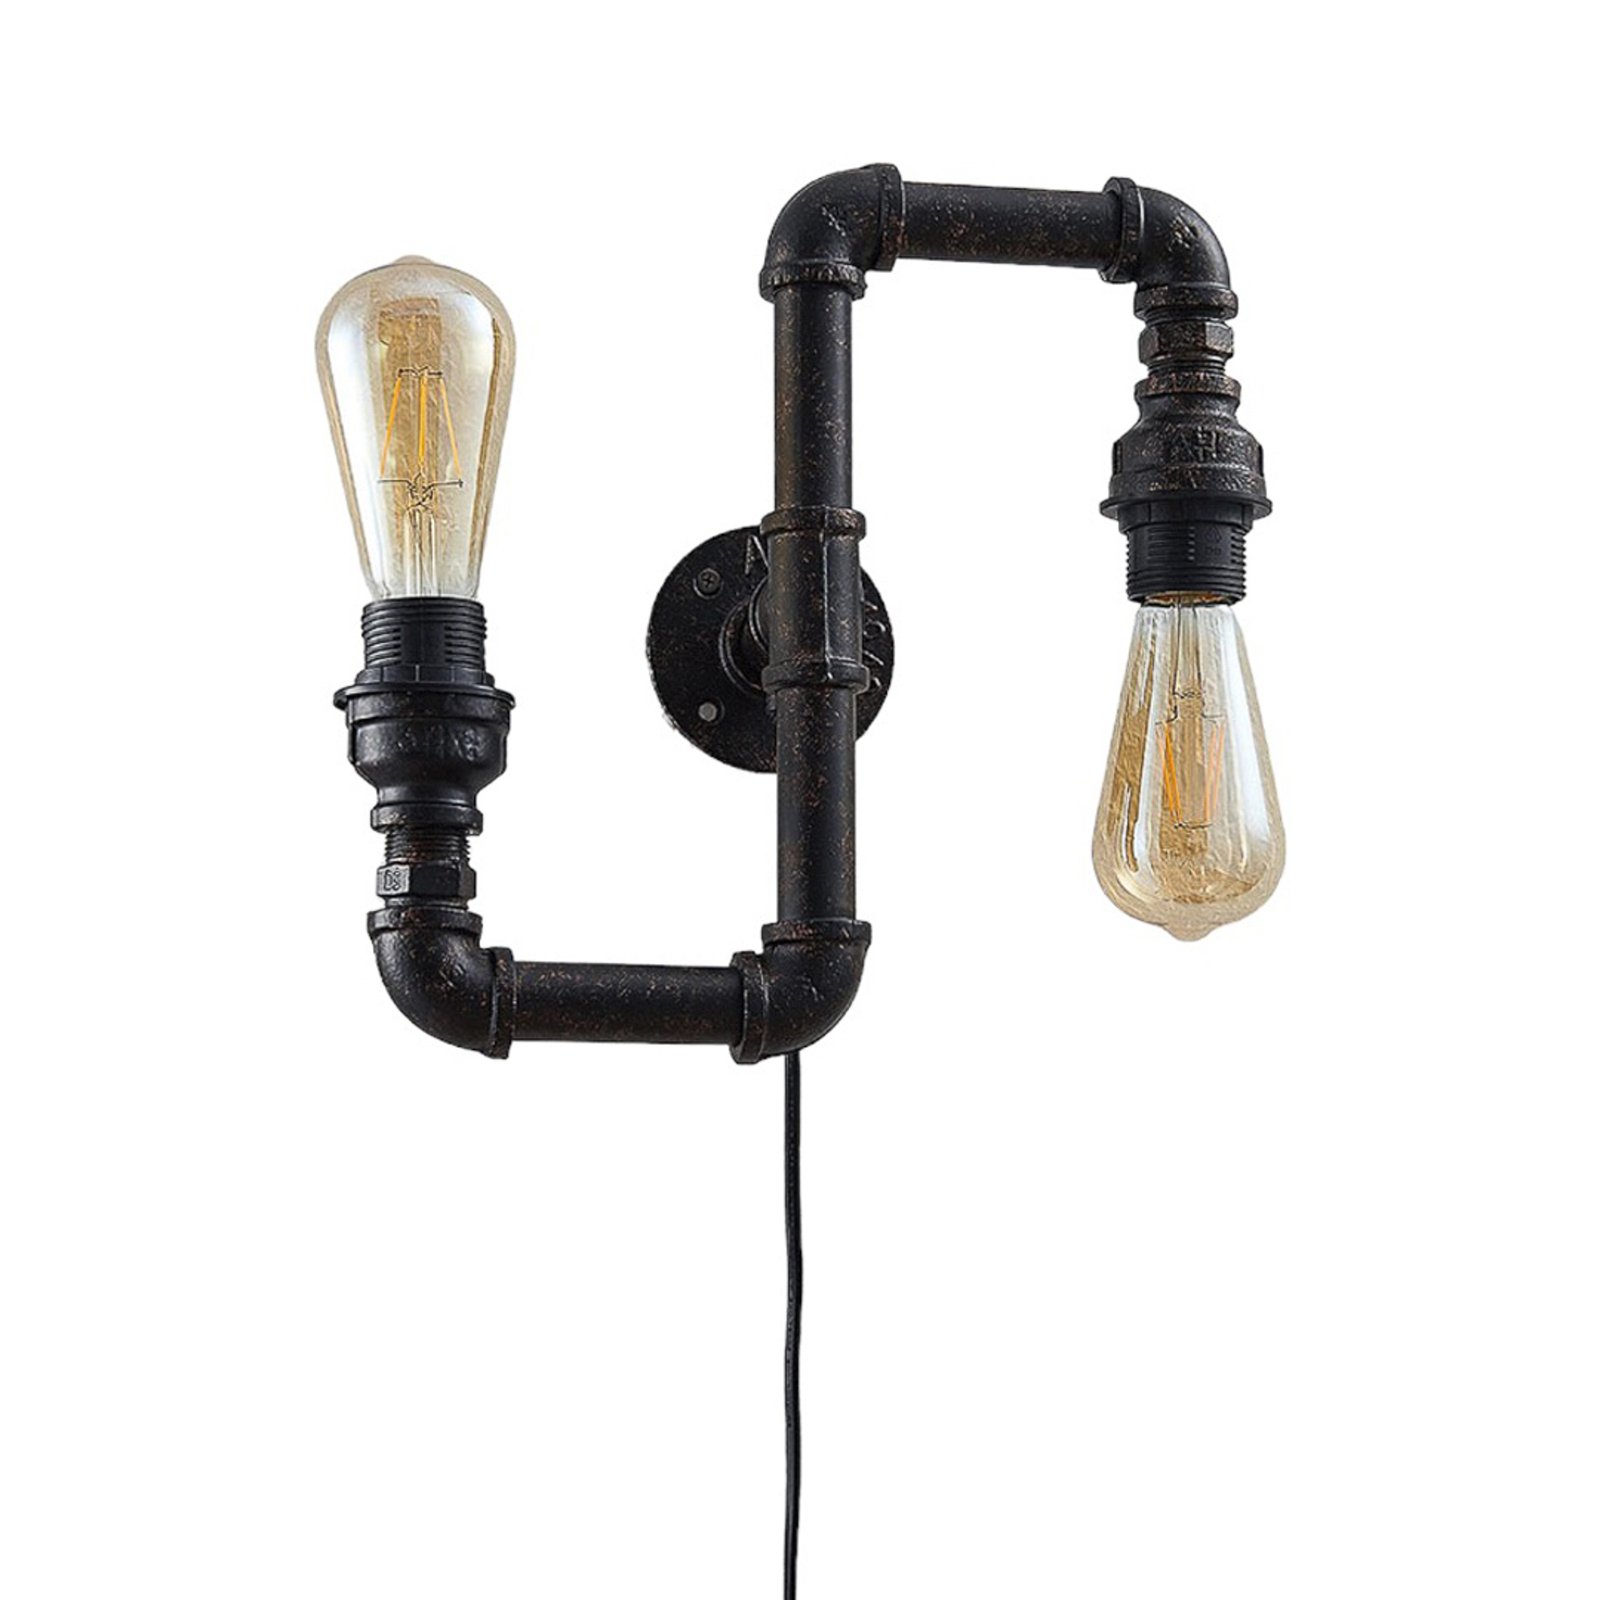 Vegglampe Josip i industridesign, up & down